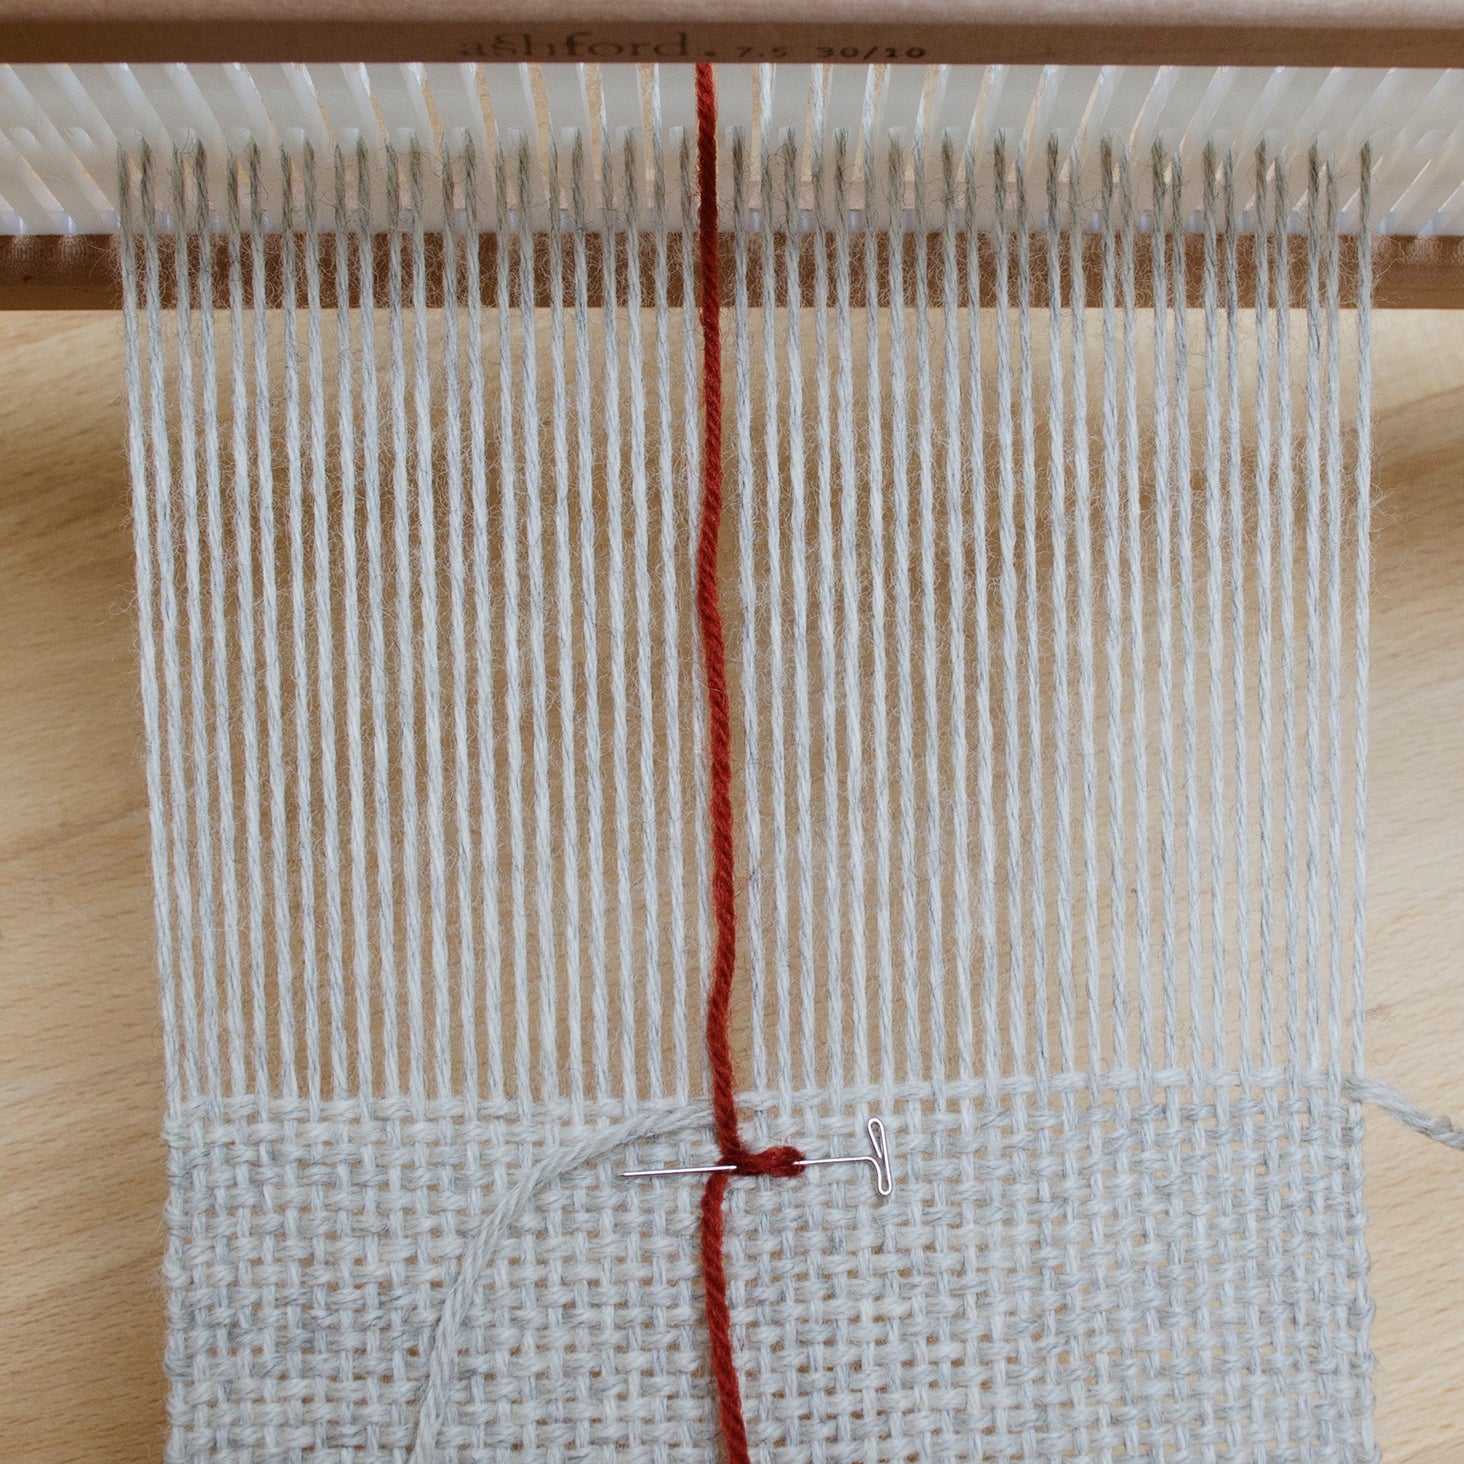 Tips for Weaving Samples - Gist Yarn